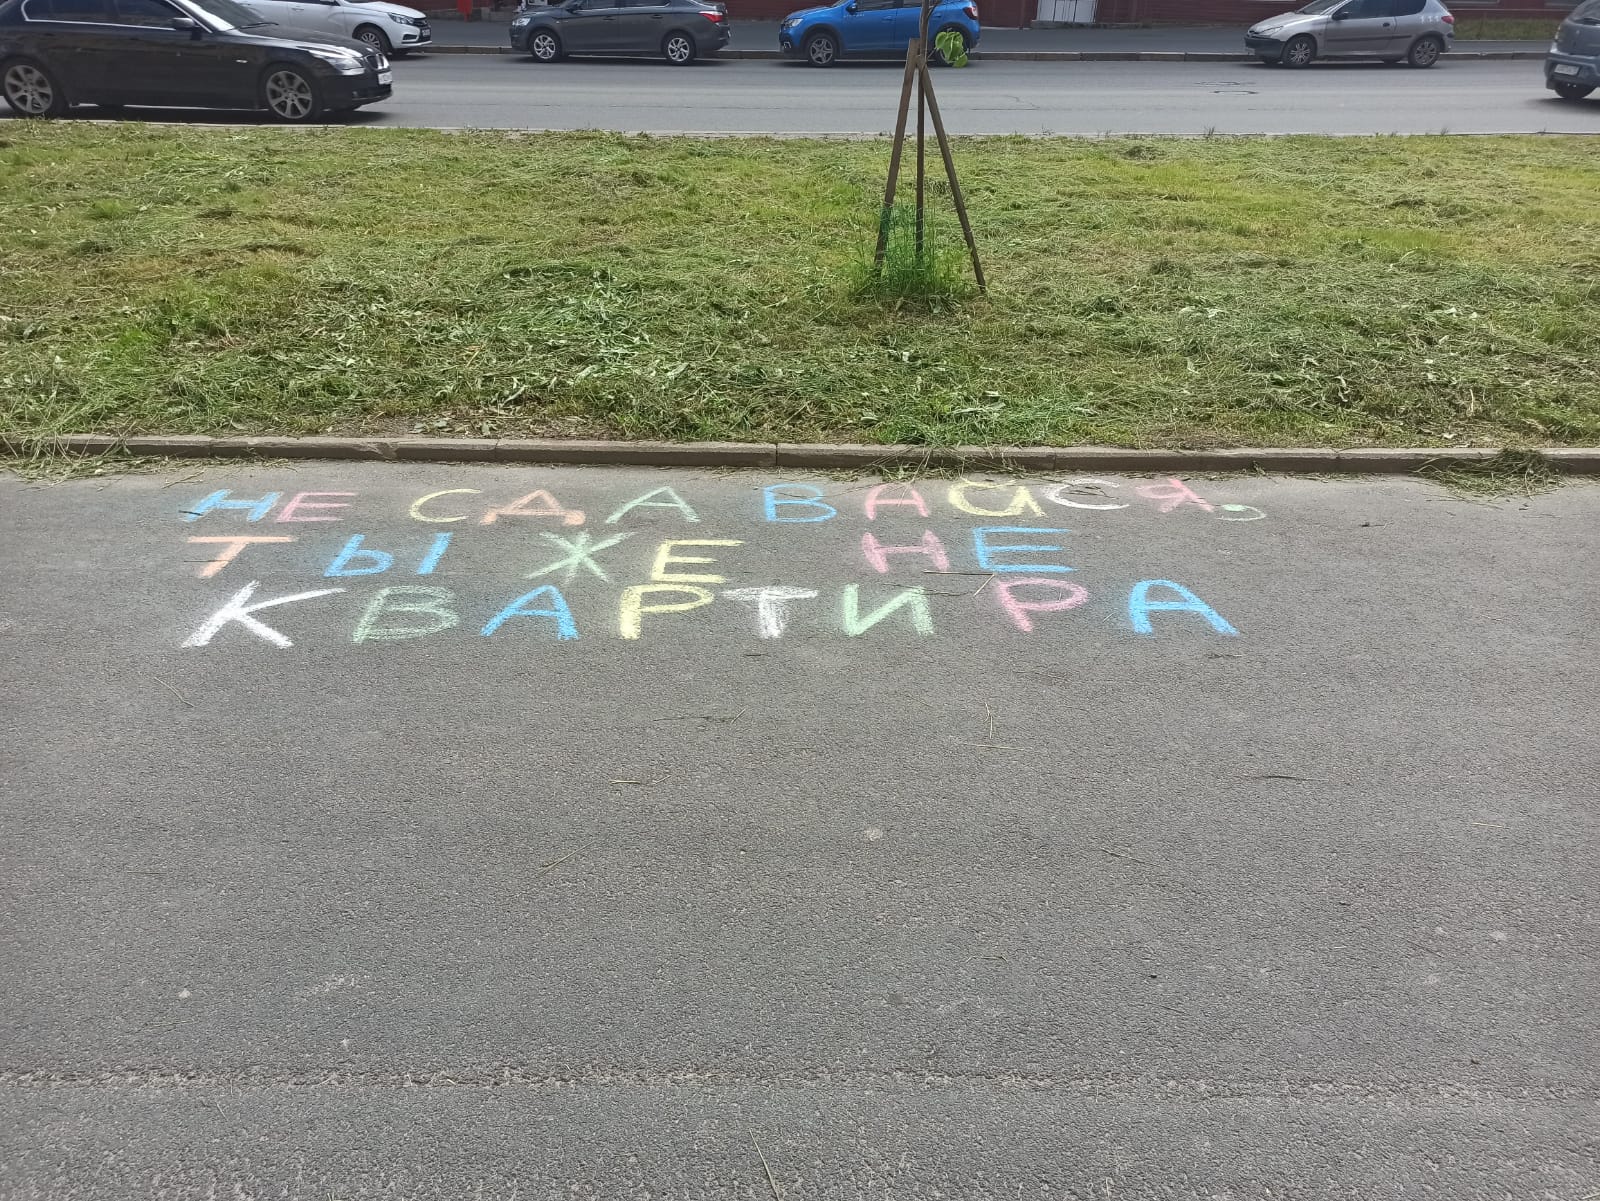 В канун выходных дней на проспекте Александра Невского на асфальте появилась яркая надпись